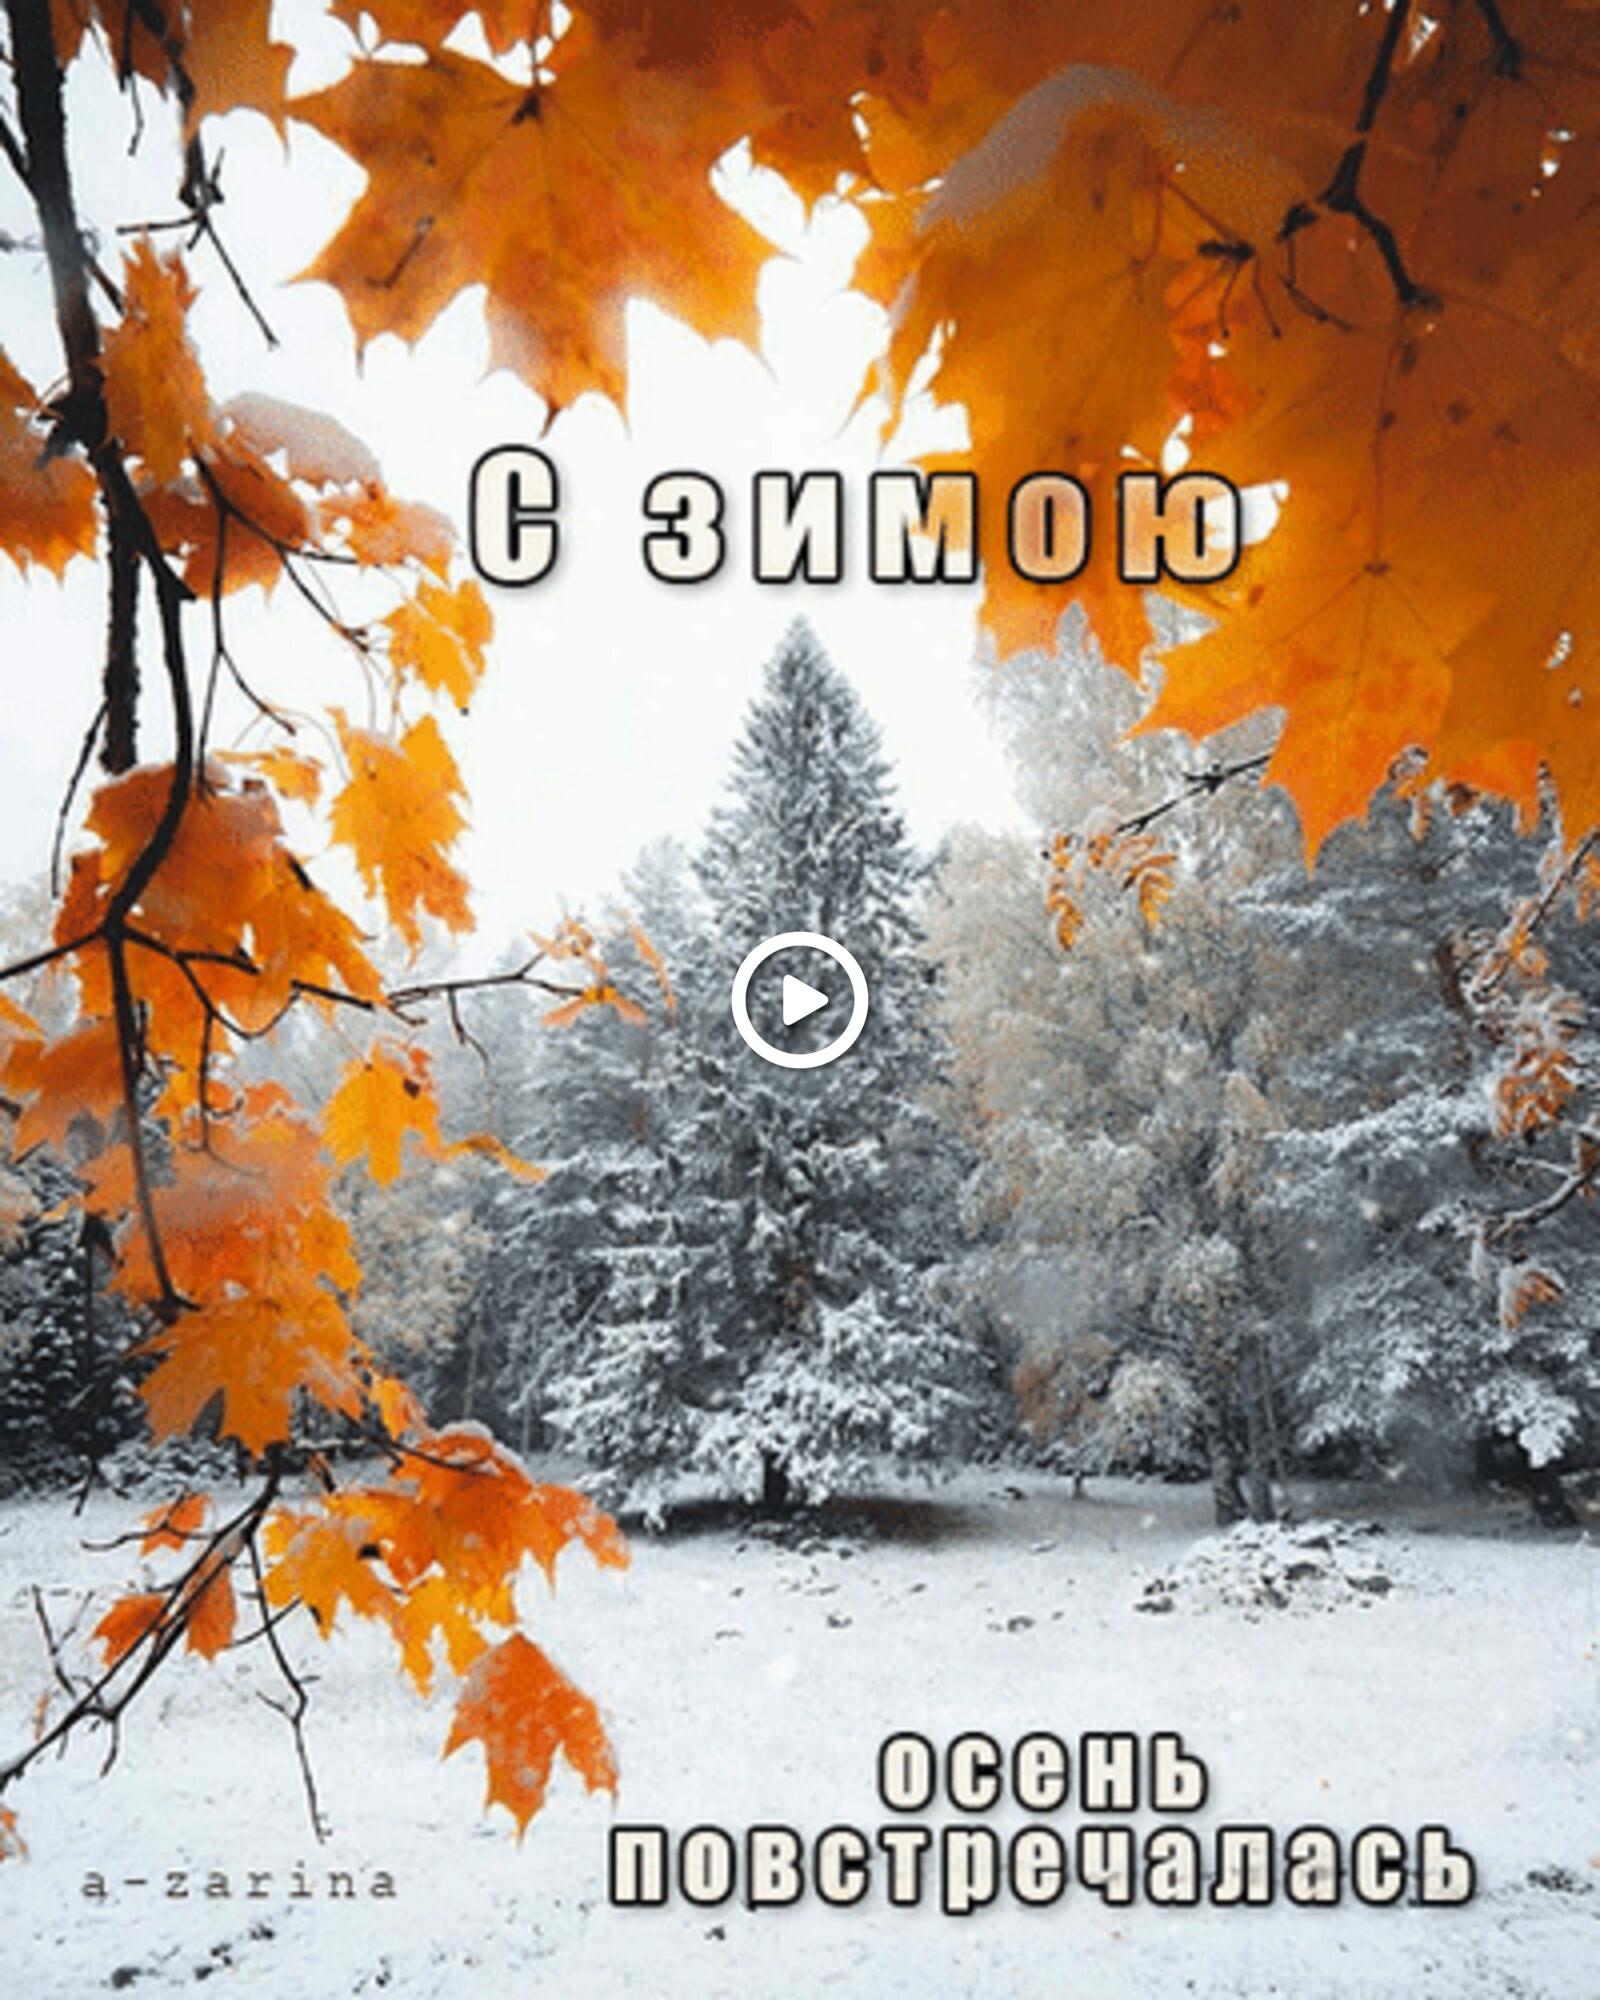 winter autumn snow